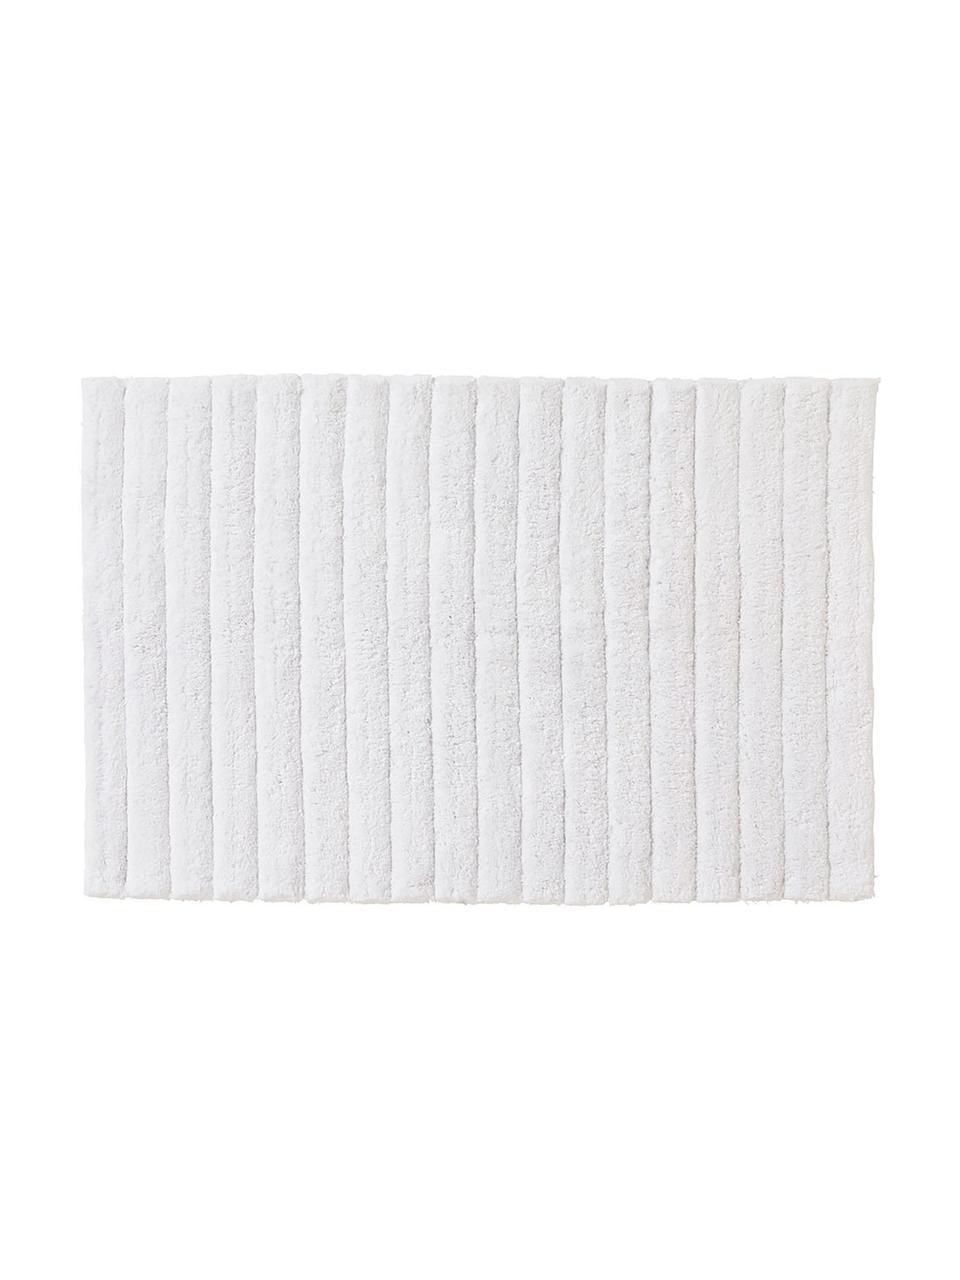 Tapis de bain moelleux blanc Board, 100 % coton,
Qualité supérieure, 1 900 g/m², Blanc, larg. 50 x long. 60 cm